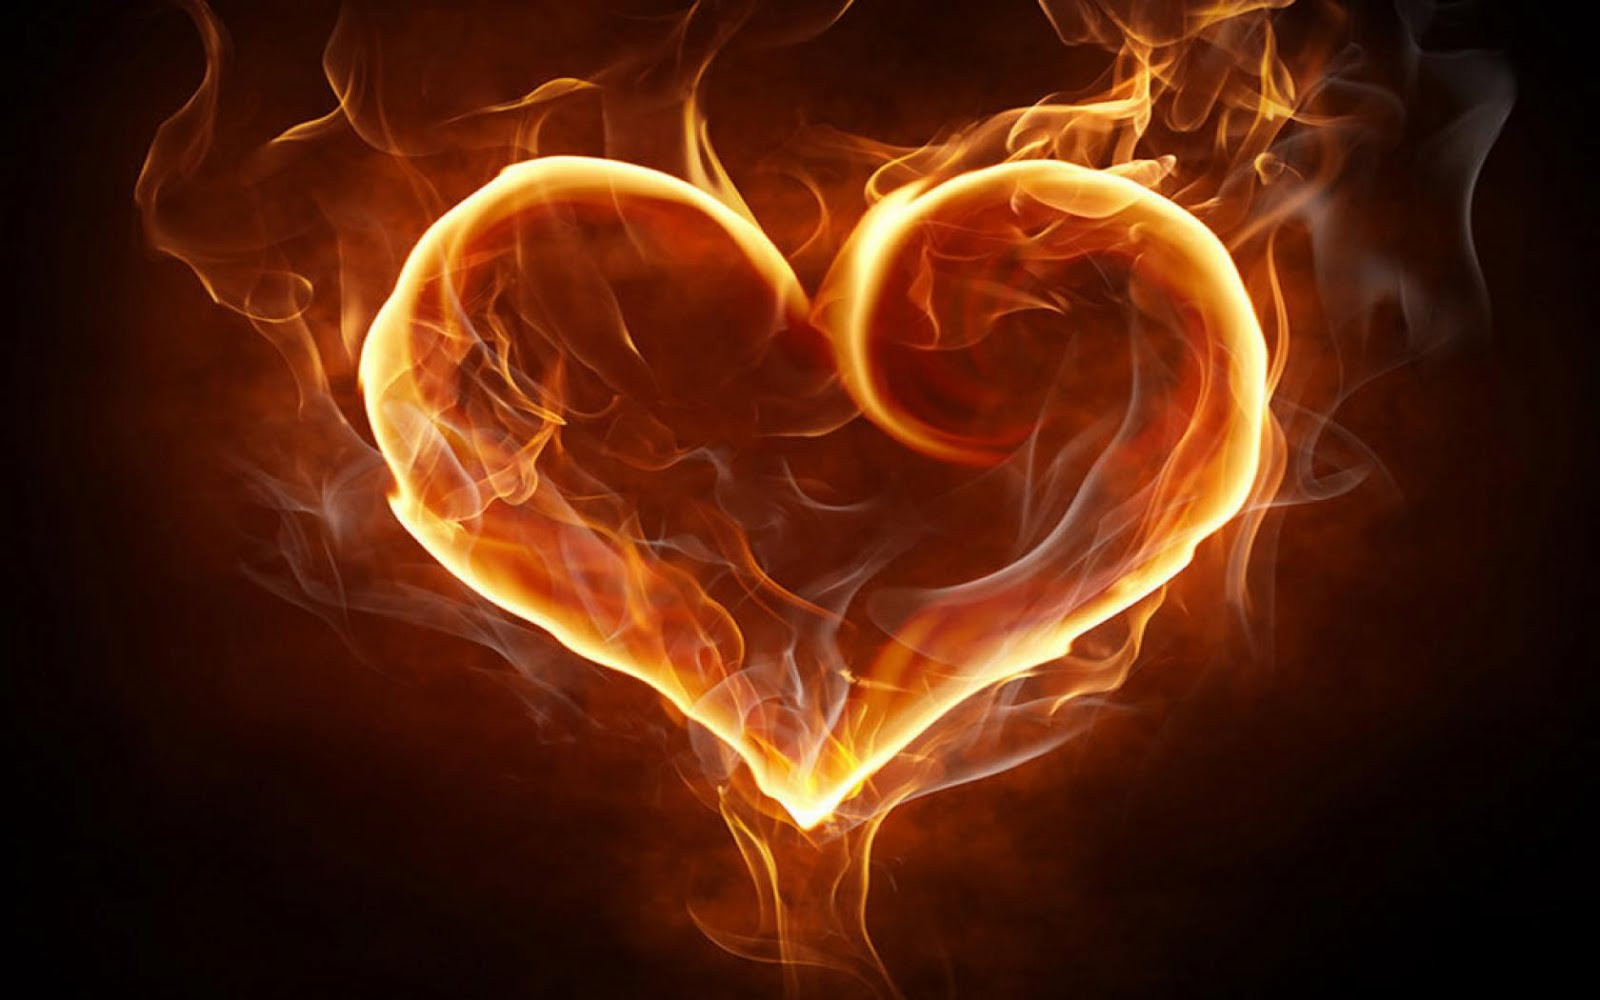 Đọc hiểu Ngọn lửa, Trái tim có điều kì diệu